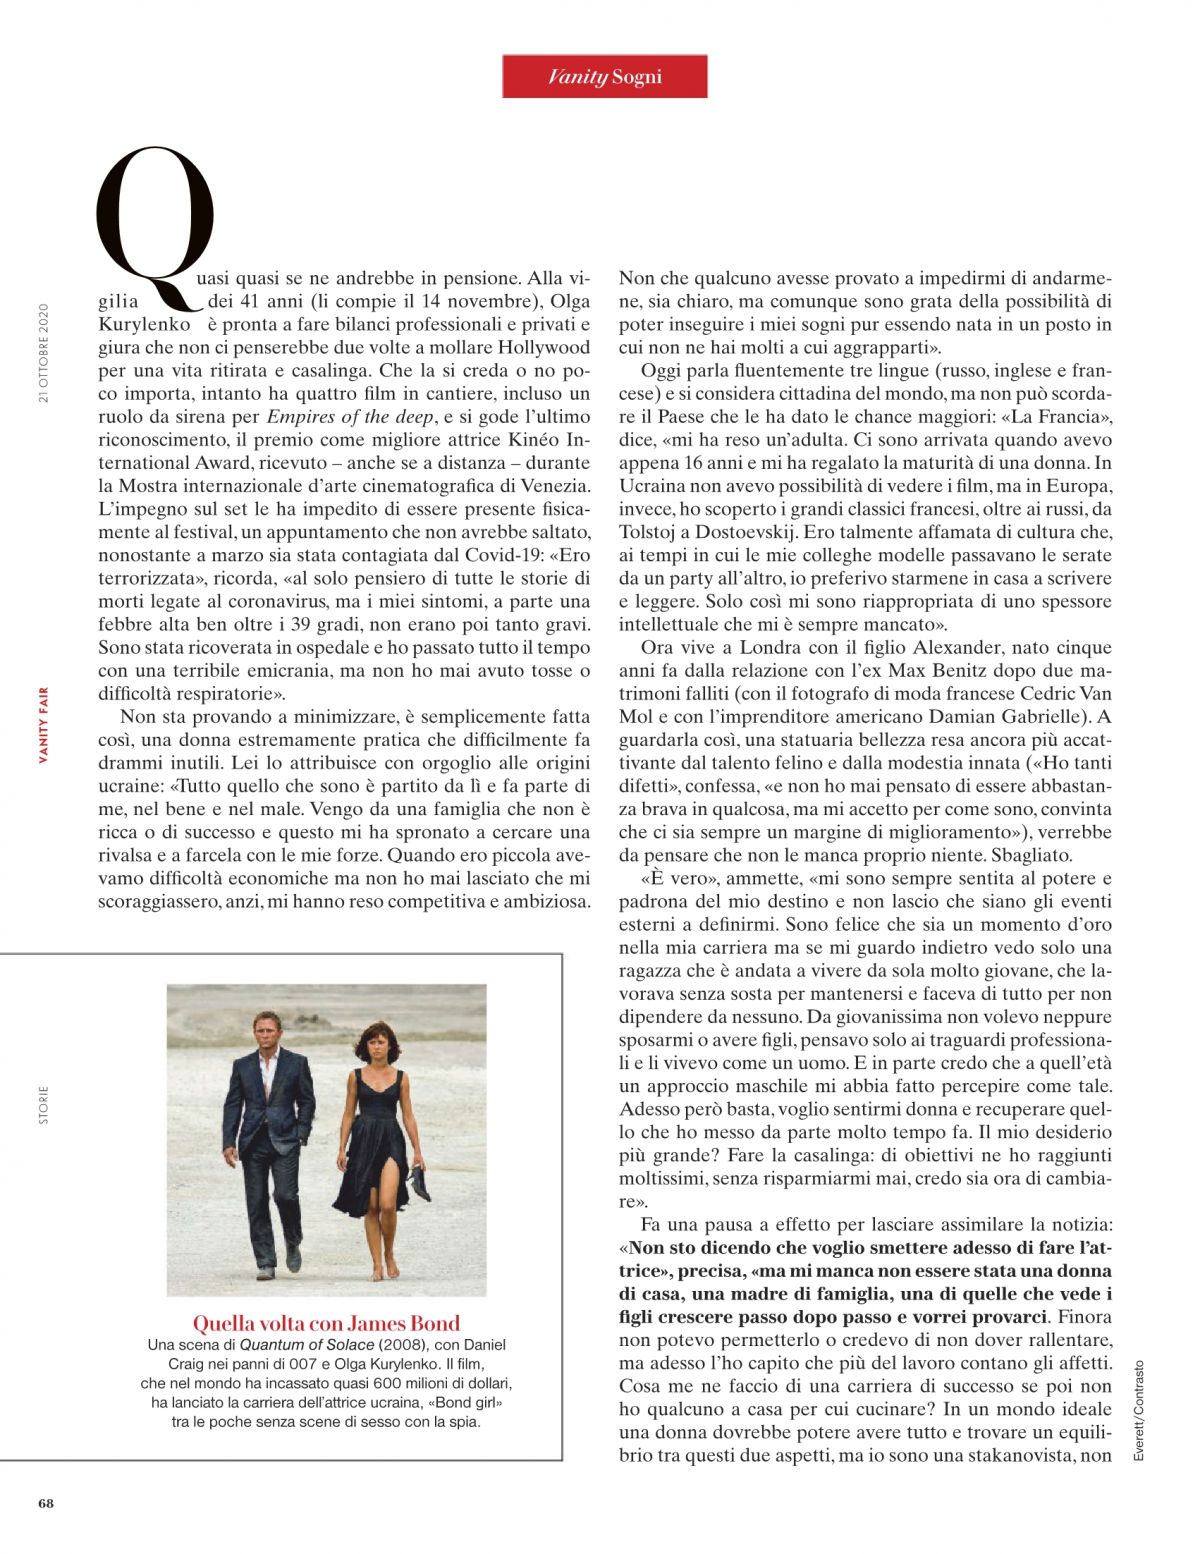 olga-kurylenko-in-vanity-fair-magazine-italy-october-2020-1.jpg